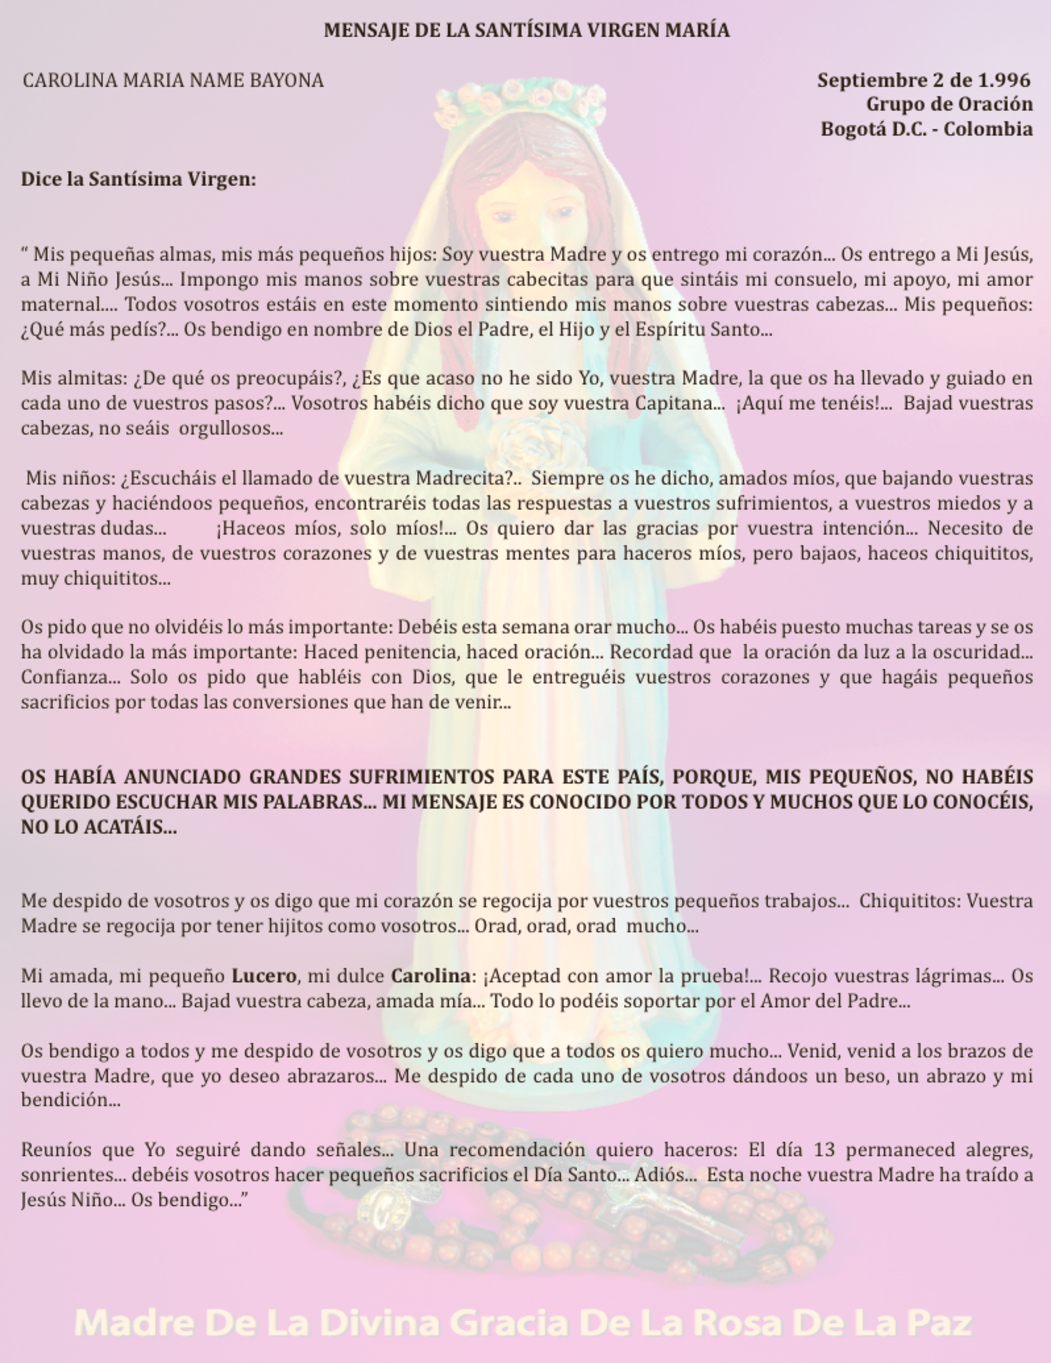 SEPT 02 de 1996 Bogotá Colombia - mensaje de la virgen